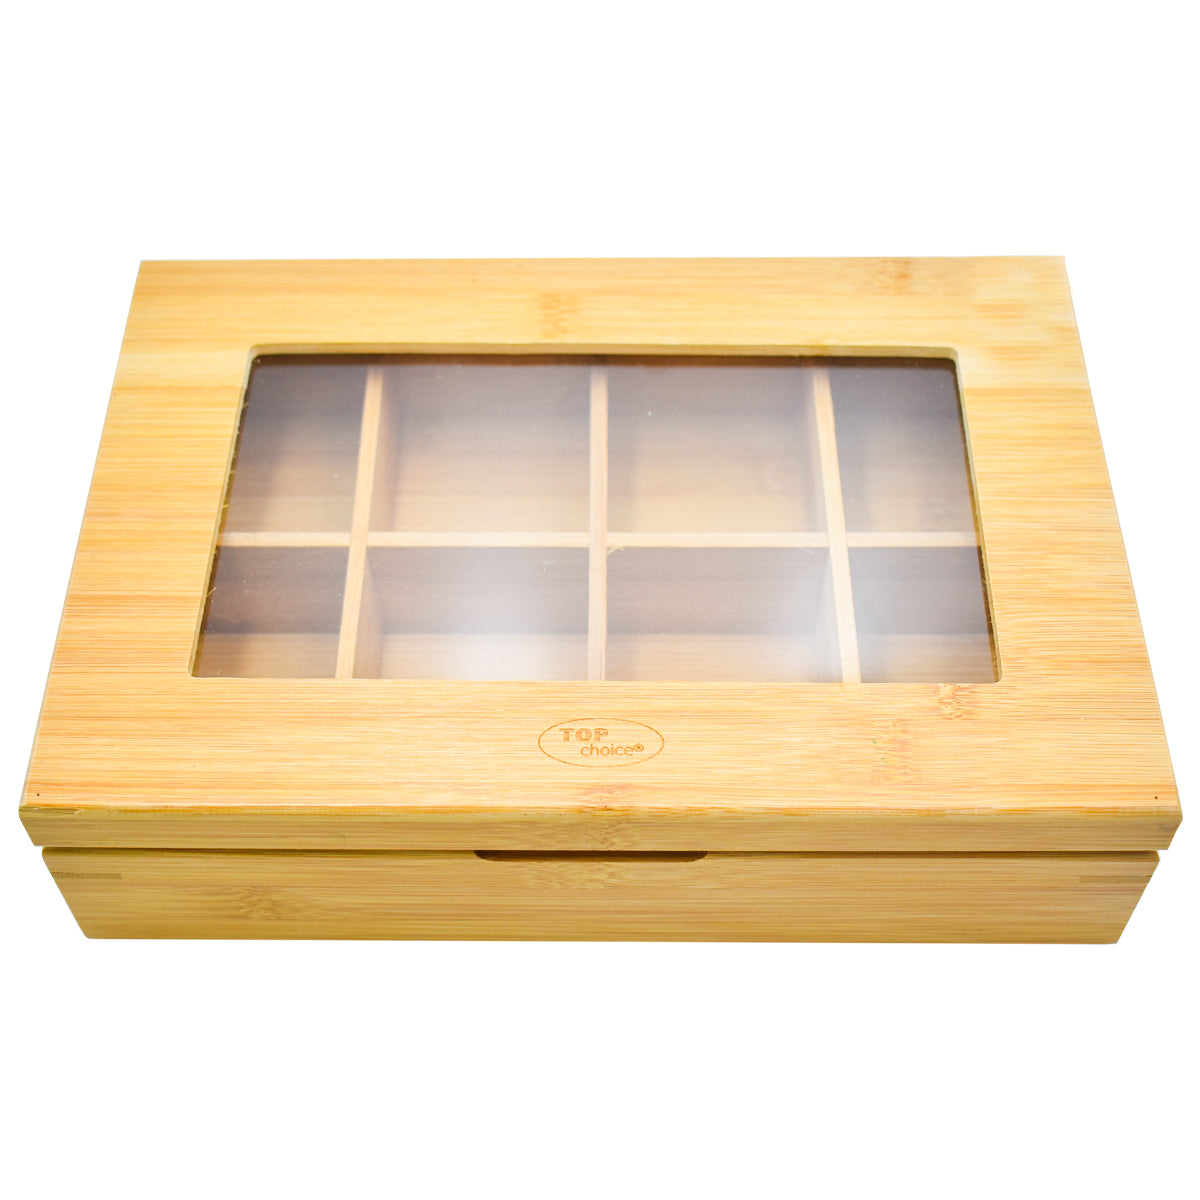 Caja Organizadora De Té Top Choice Almacenamiento Cocina Bambú Madera